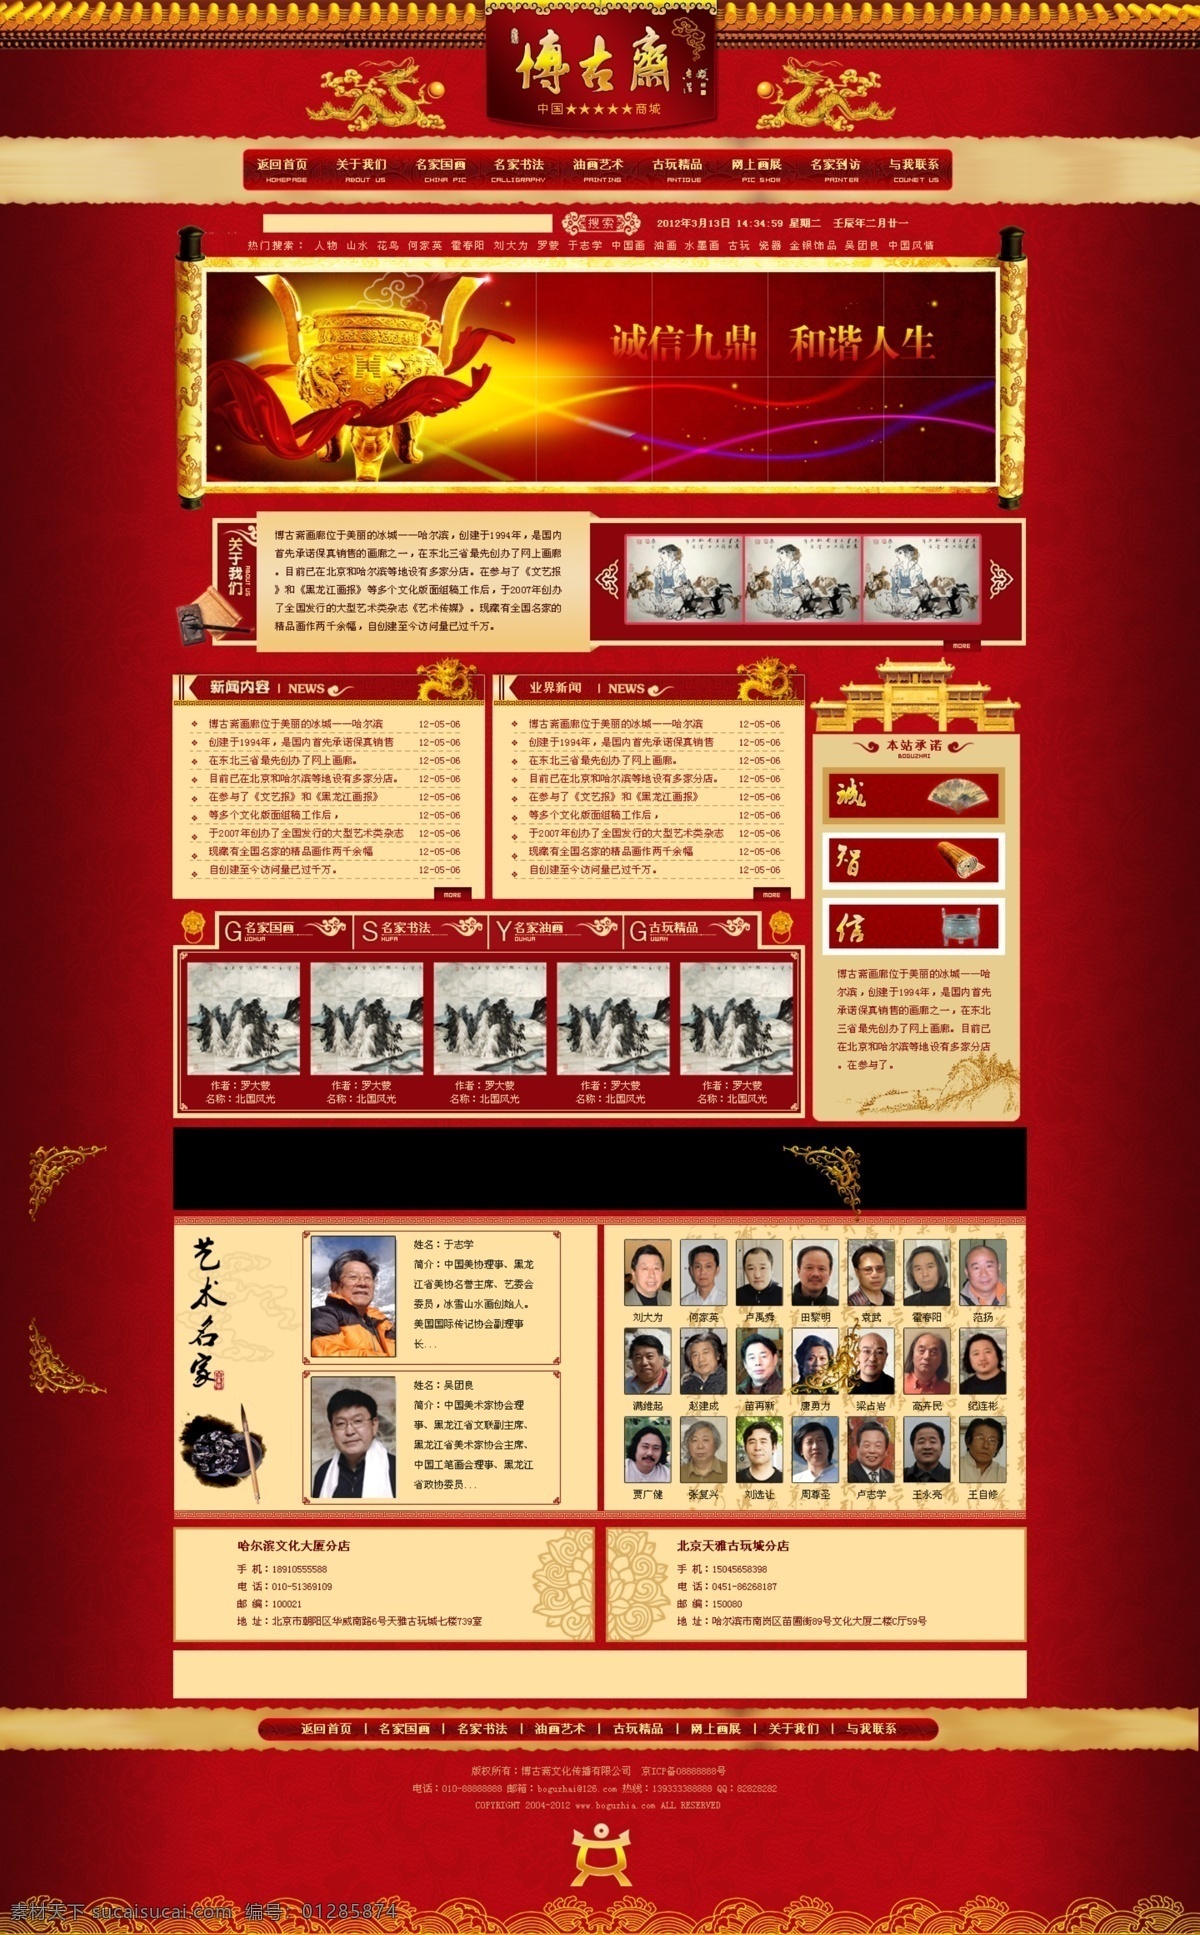 艺术品 销售 公司 网站首页 模版 网站 首页 其它设计 web 界面设计 中文模板 红色